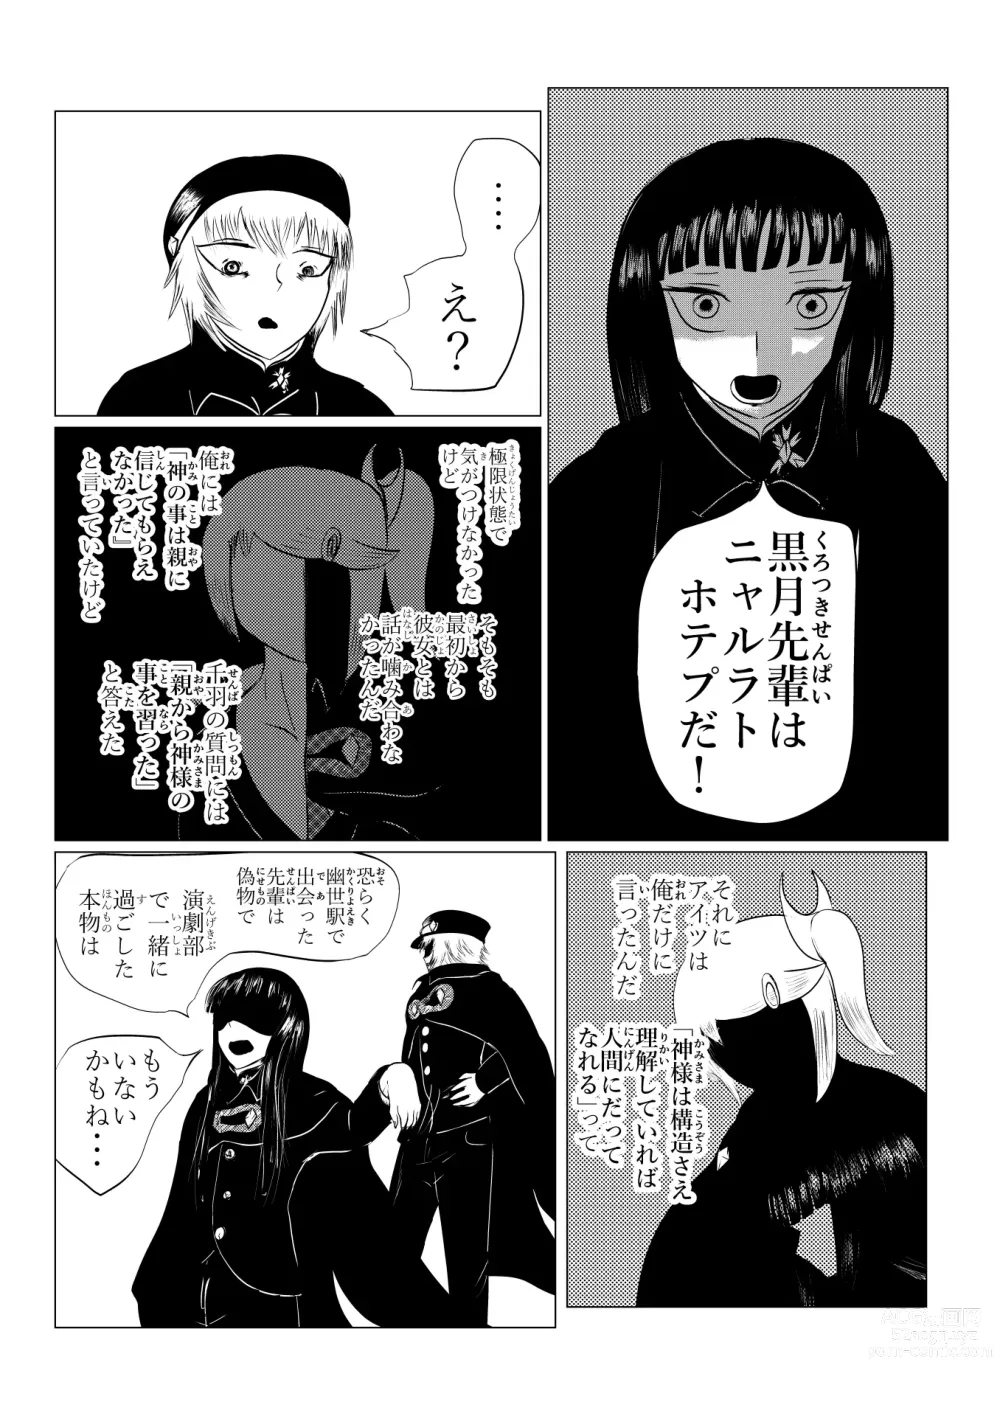 Page 203 of doujinshi HYPE-C Kutourufu Shinwa Musou Roku